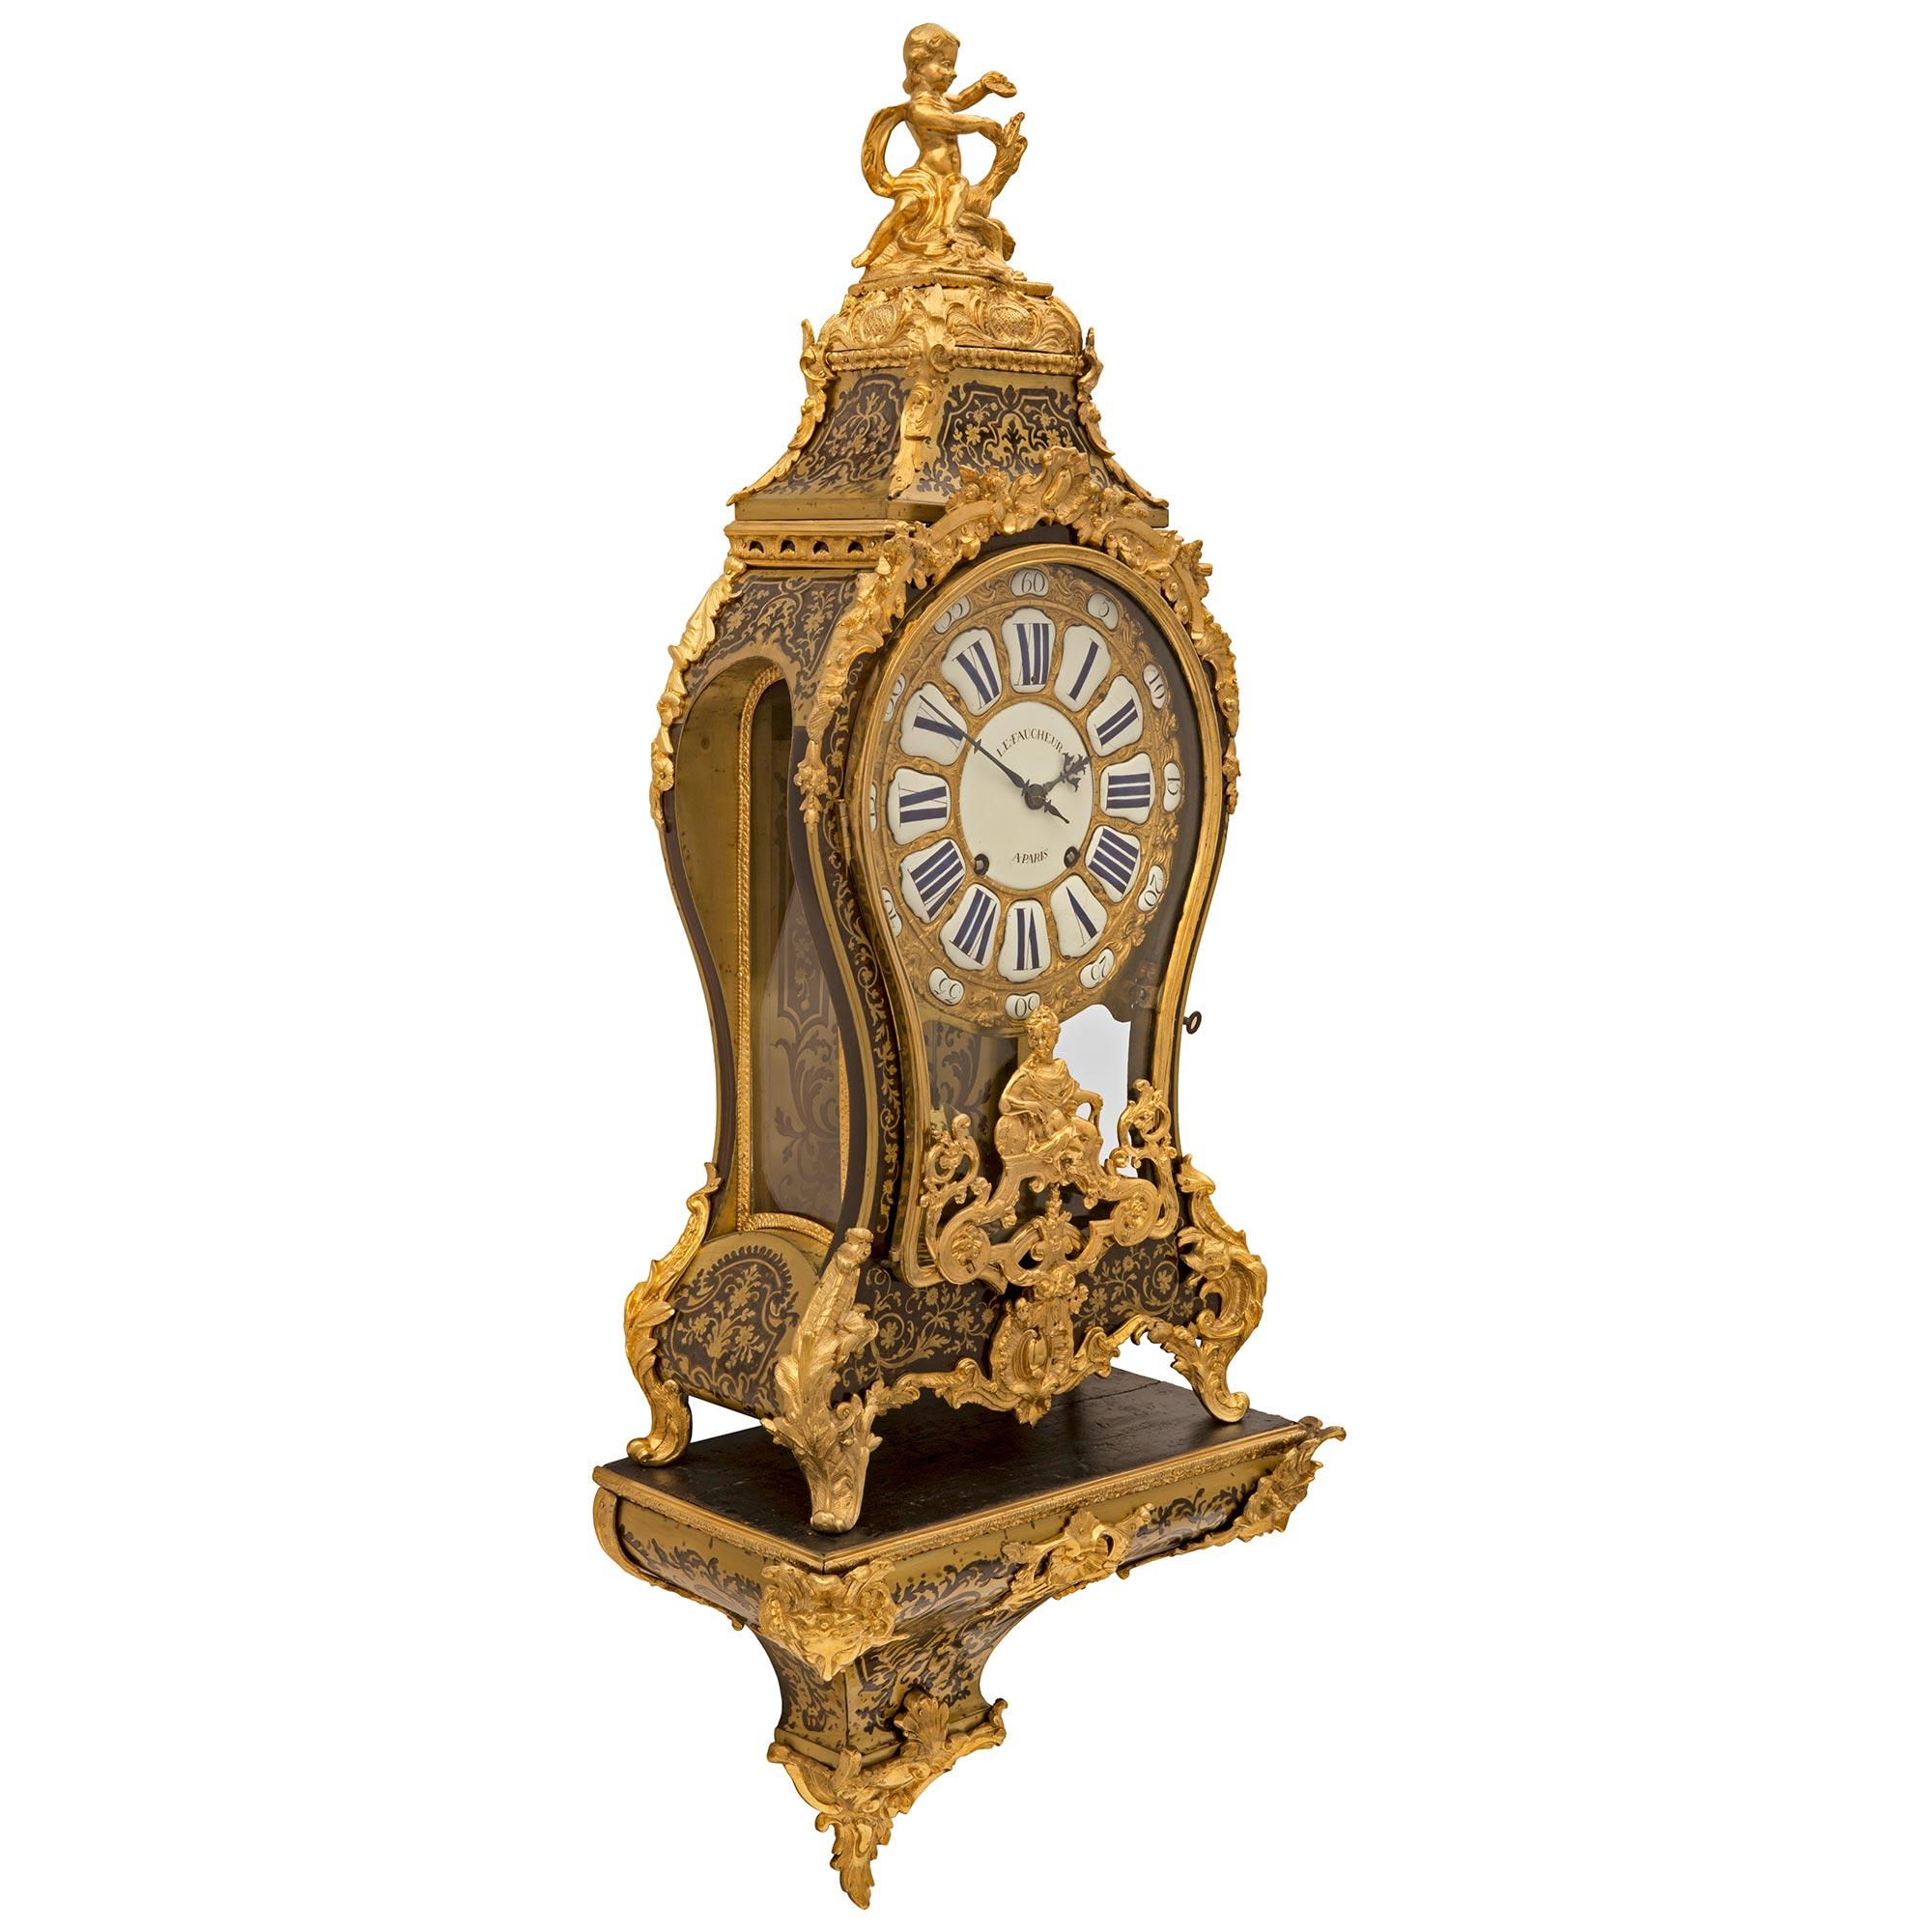 Une grande et importante horloge cartel française du 18ème siècle d'époque Louis XV en écaille de tortue et bronze doré signée Le Faucheur, A Paris. L'horloge est posée sur son étagère d'origine et présente un exceptionnel design effilé et incurvé,